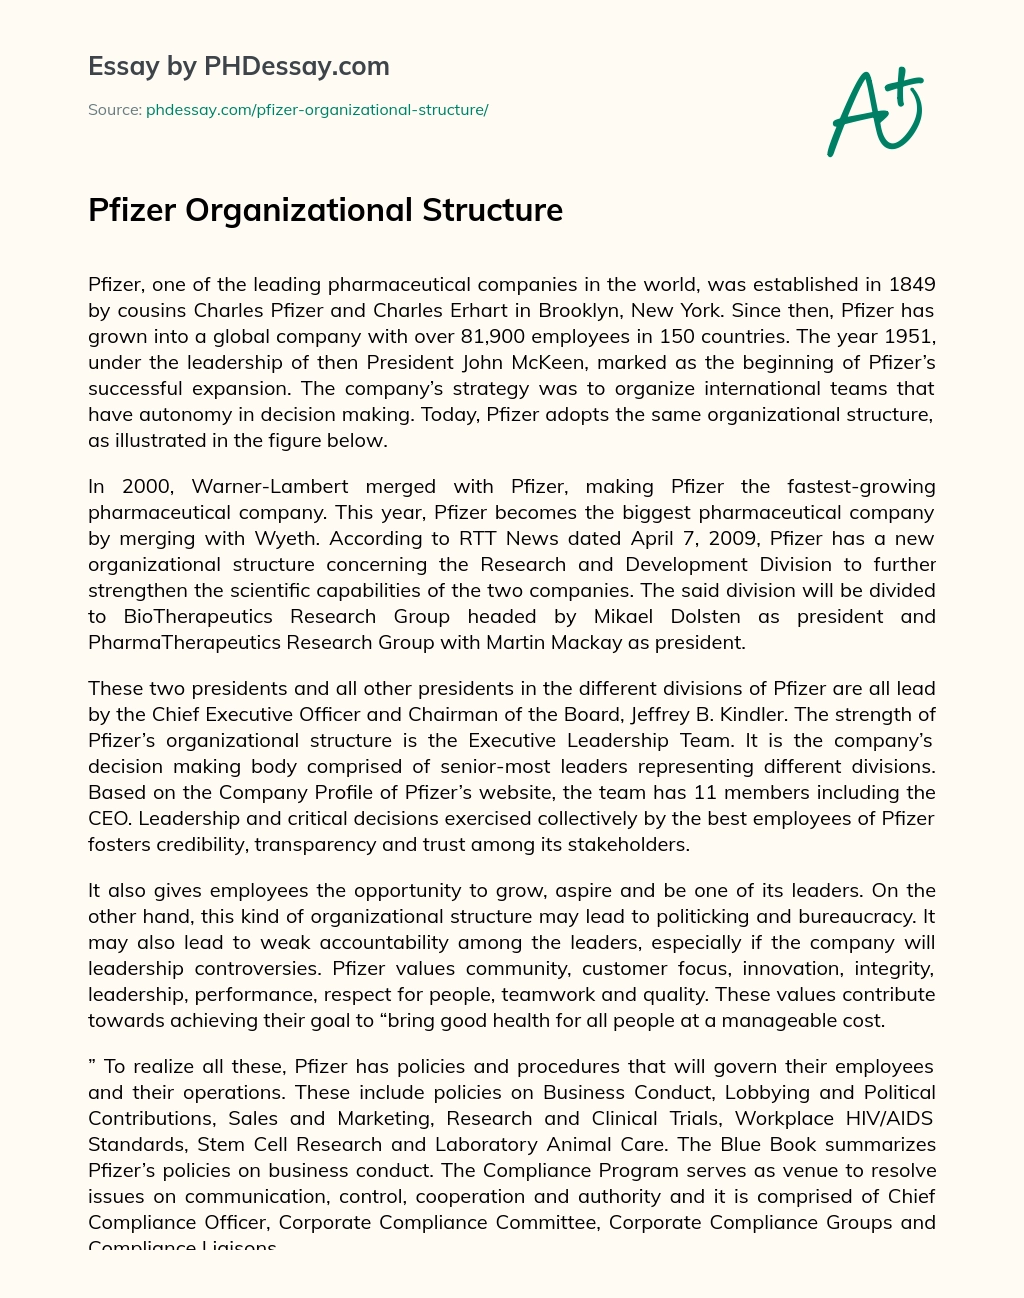 Pfizer Organizational Structure essay